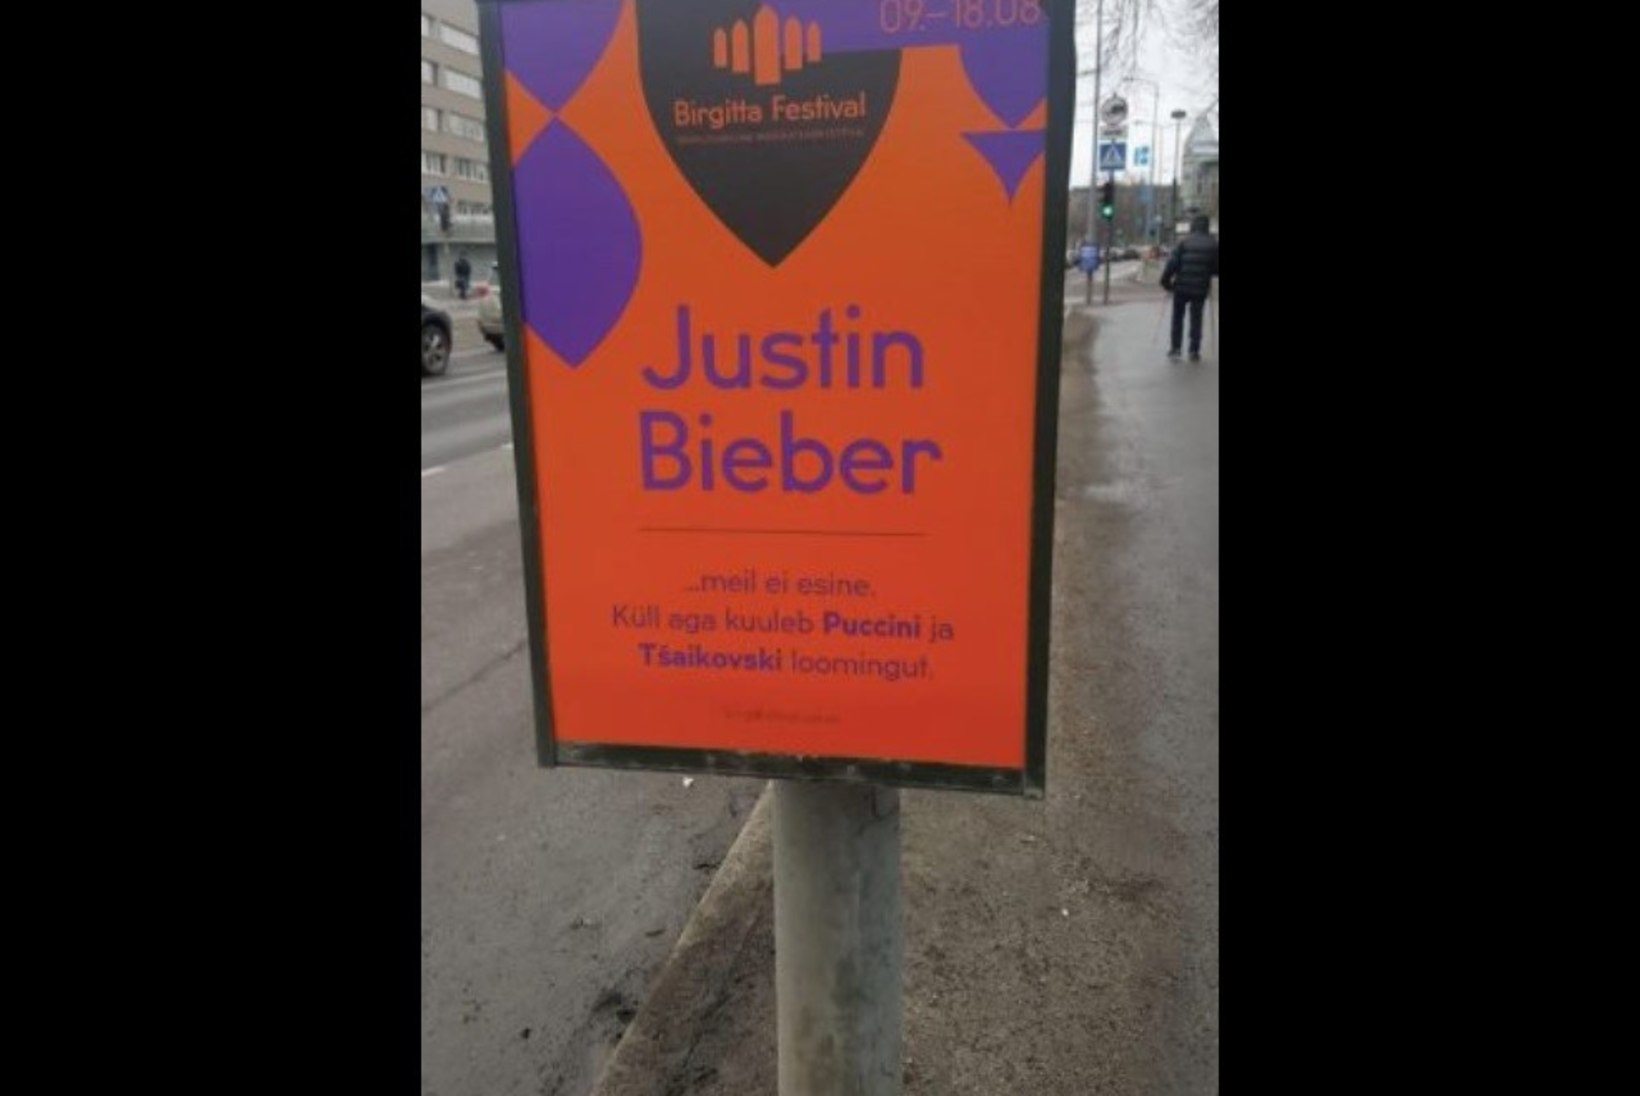 Birgitta festival meelitab külastajaid Justin Bieberiga